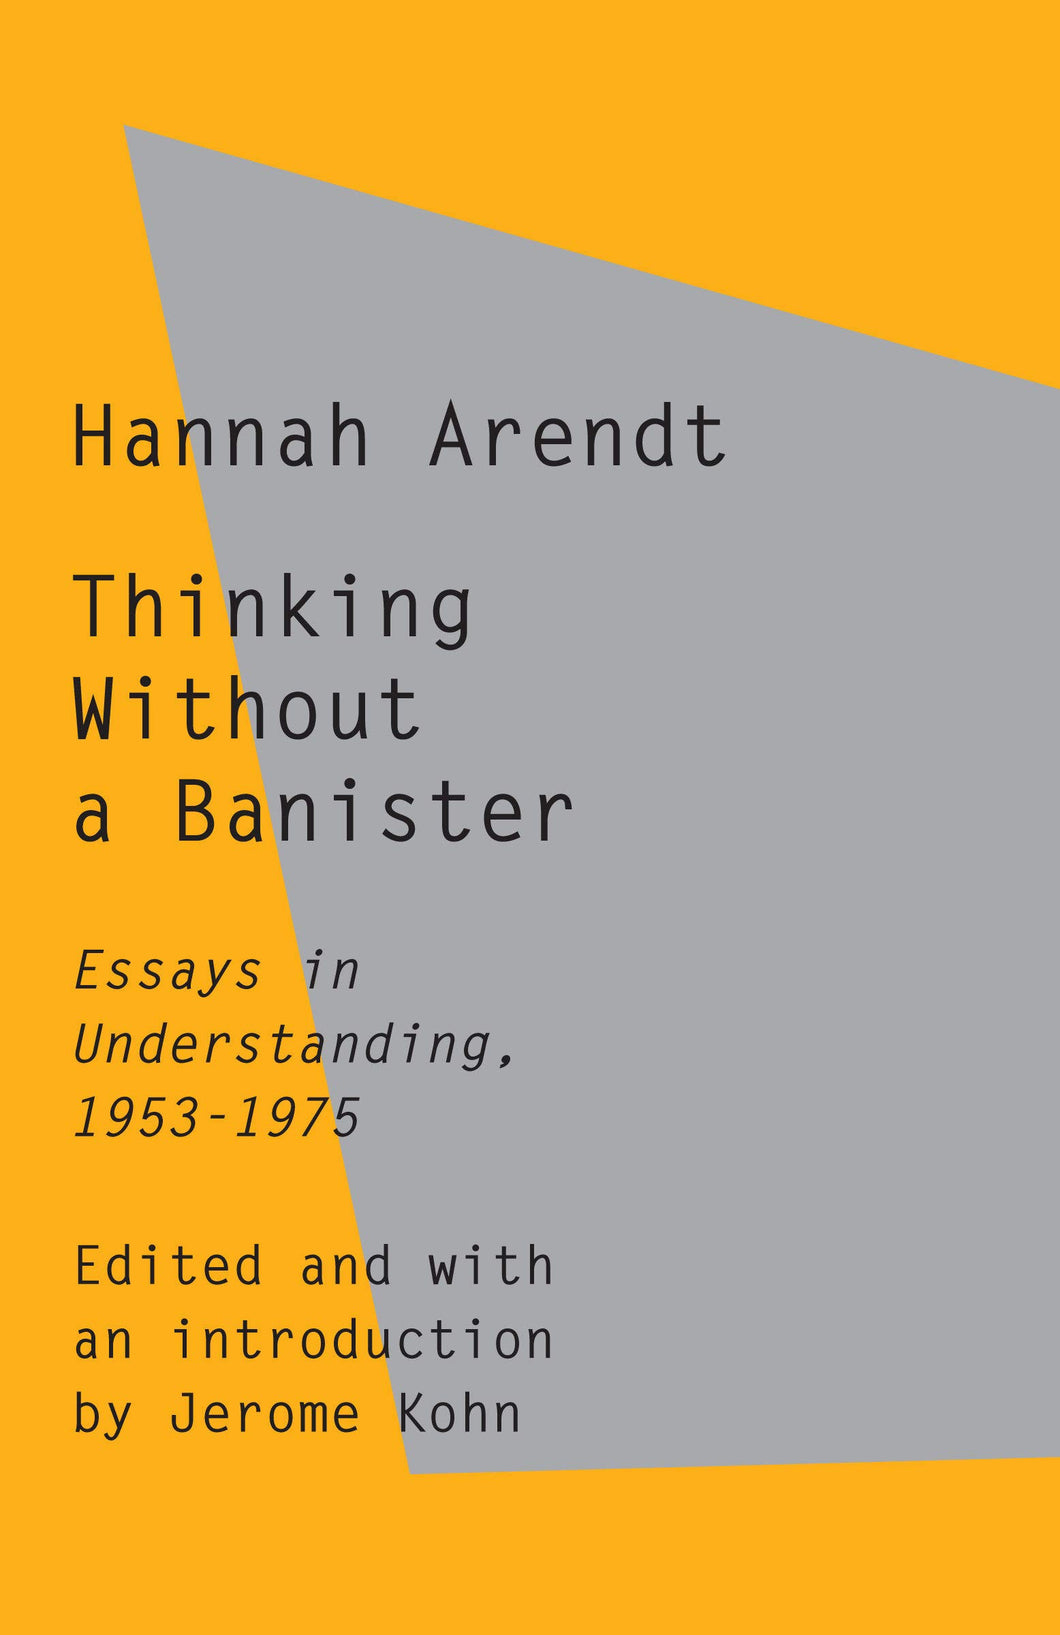 Thinking Without a Banister : Essays in Understanding, 1953-1975 ร้านหนังสือและสิ่งของ เป็นร้านหนังสือภาษาอังกฤษหายาก และร้านกาแฟ หรือ บุ๊คคาเฟ่ ตั้งอยู่สุขุมวิท กรุงเทพ